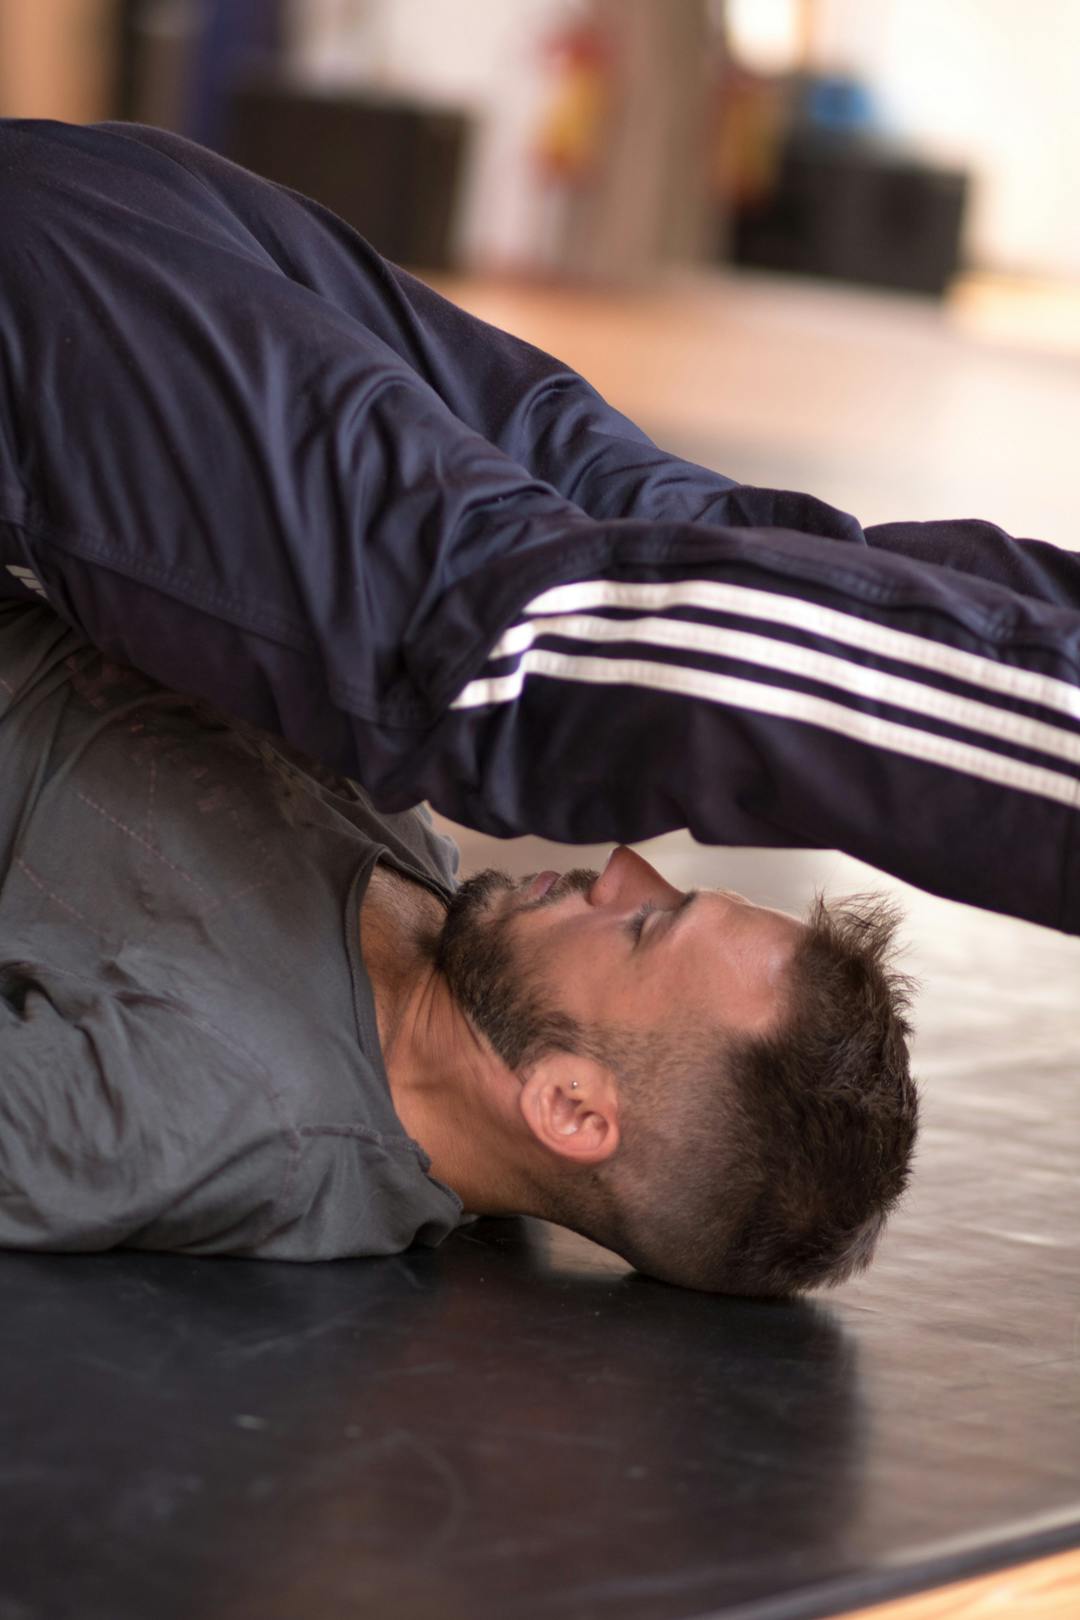 Un danzatore durante il riscaldamento in sala. È sdraiato a terra e solleva gambe e bacino oltre la propria testa.